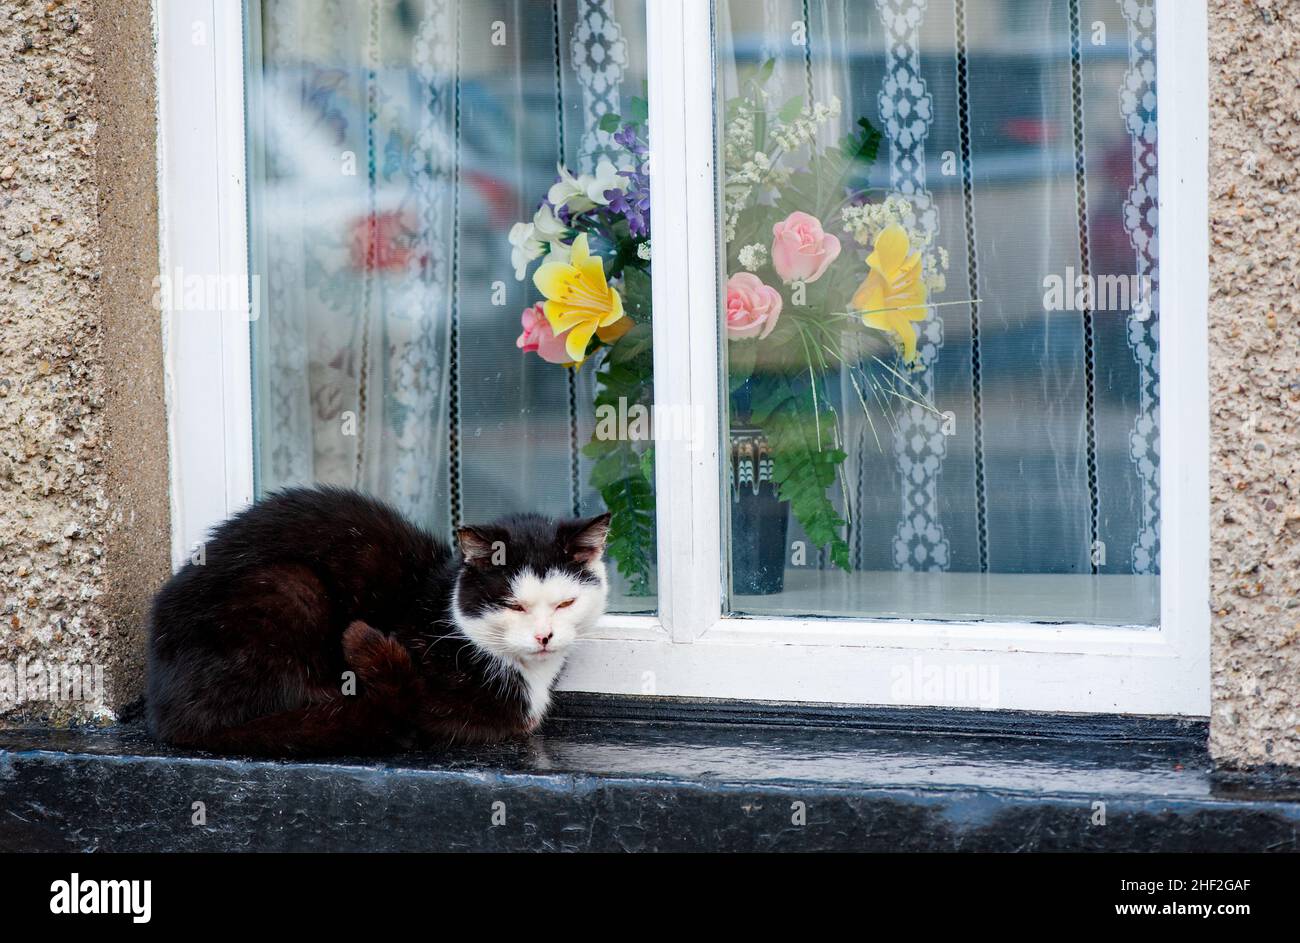 Beautiful cat sitting on windowsill outside house Stock Photo